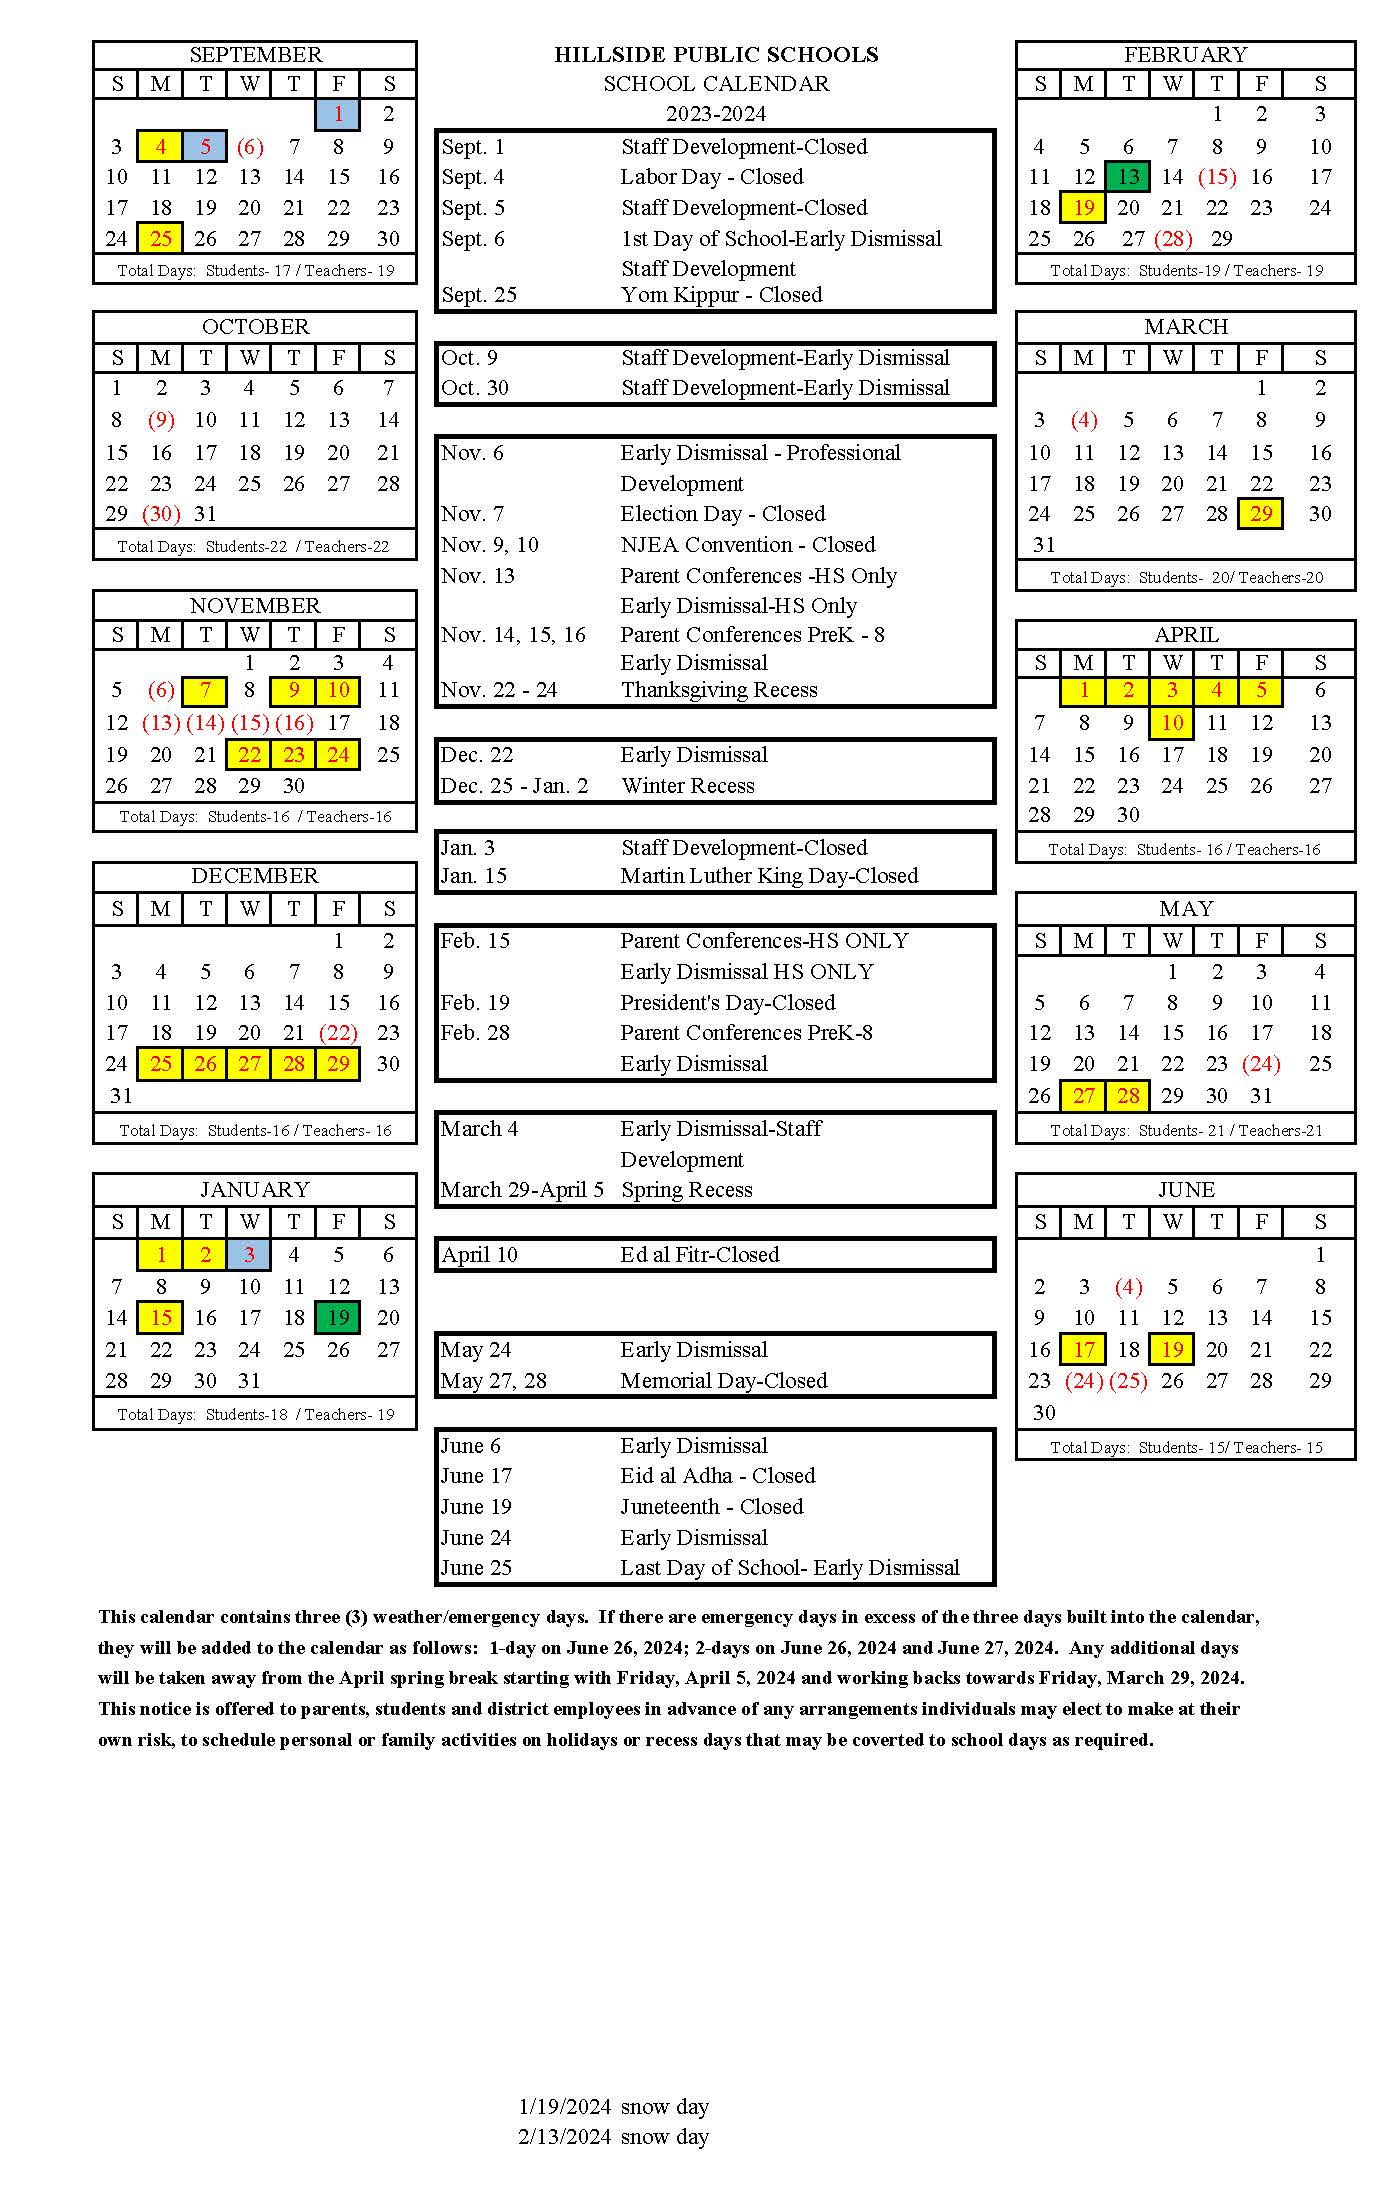 District Calendar | Hillside Public Schools